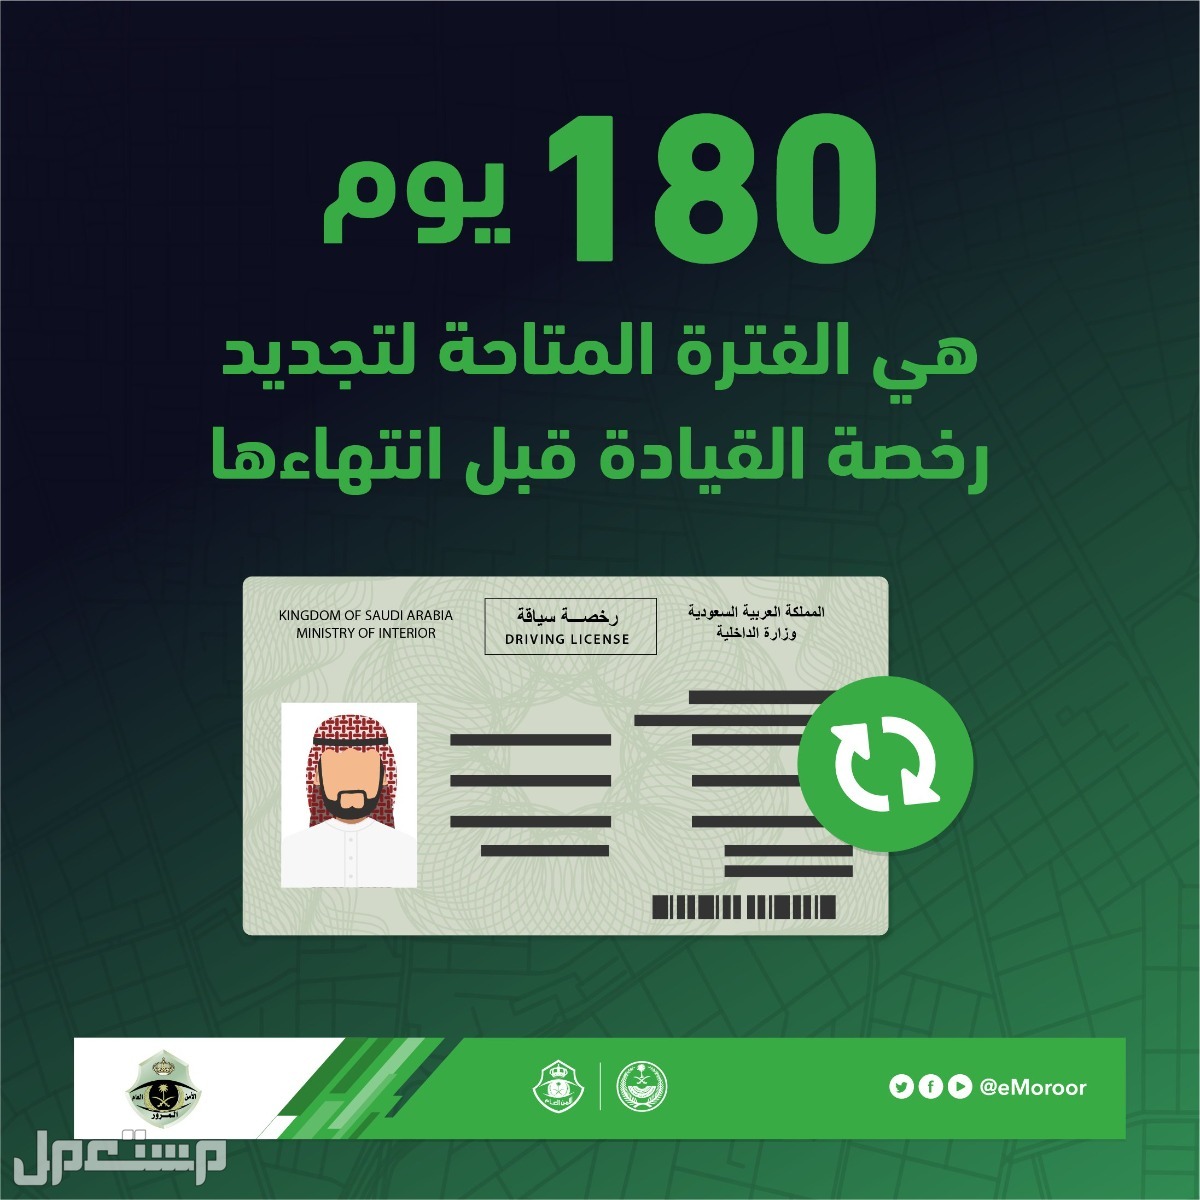 هل يمكن تجديد رخصة القيادة بدون فحص النظر؟ "المرور" يوضح في البحرين